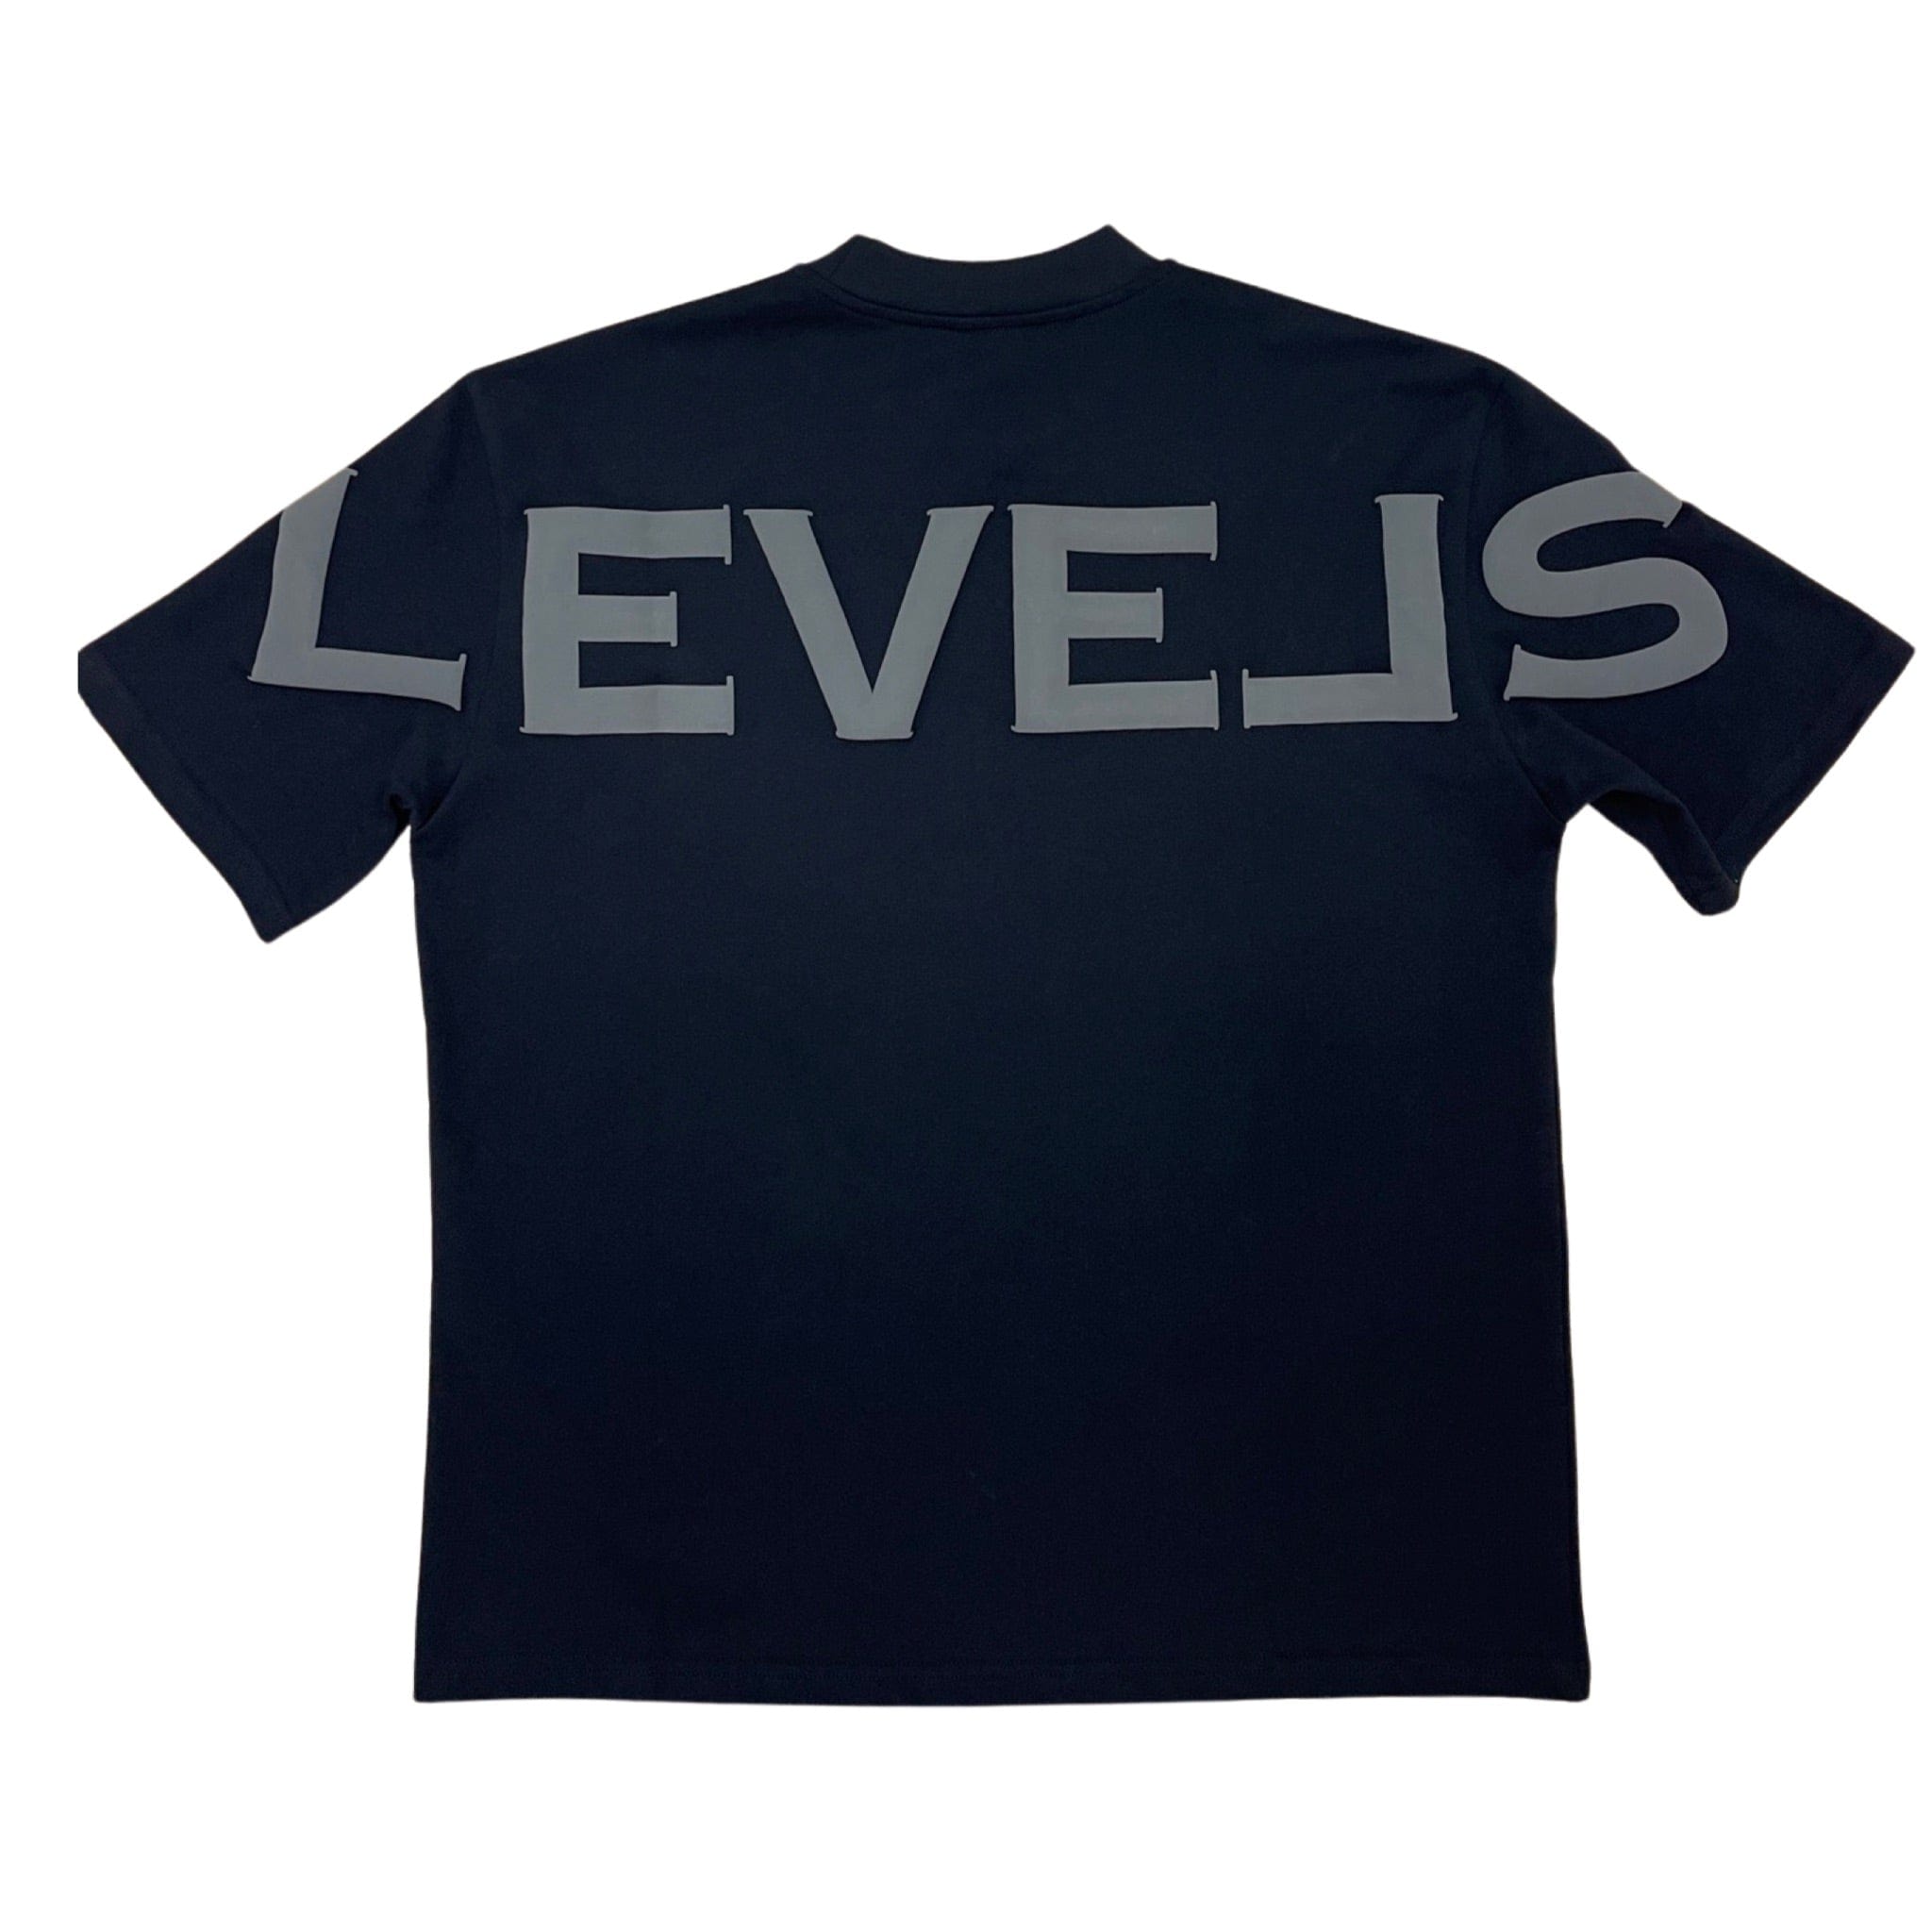 LEVELS, LLC oversized tee EXCLUSIVE OVERSIZED TEE (BLACK/CHARCOAL)